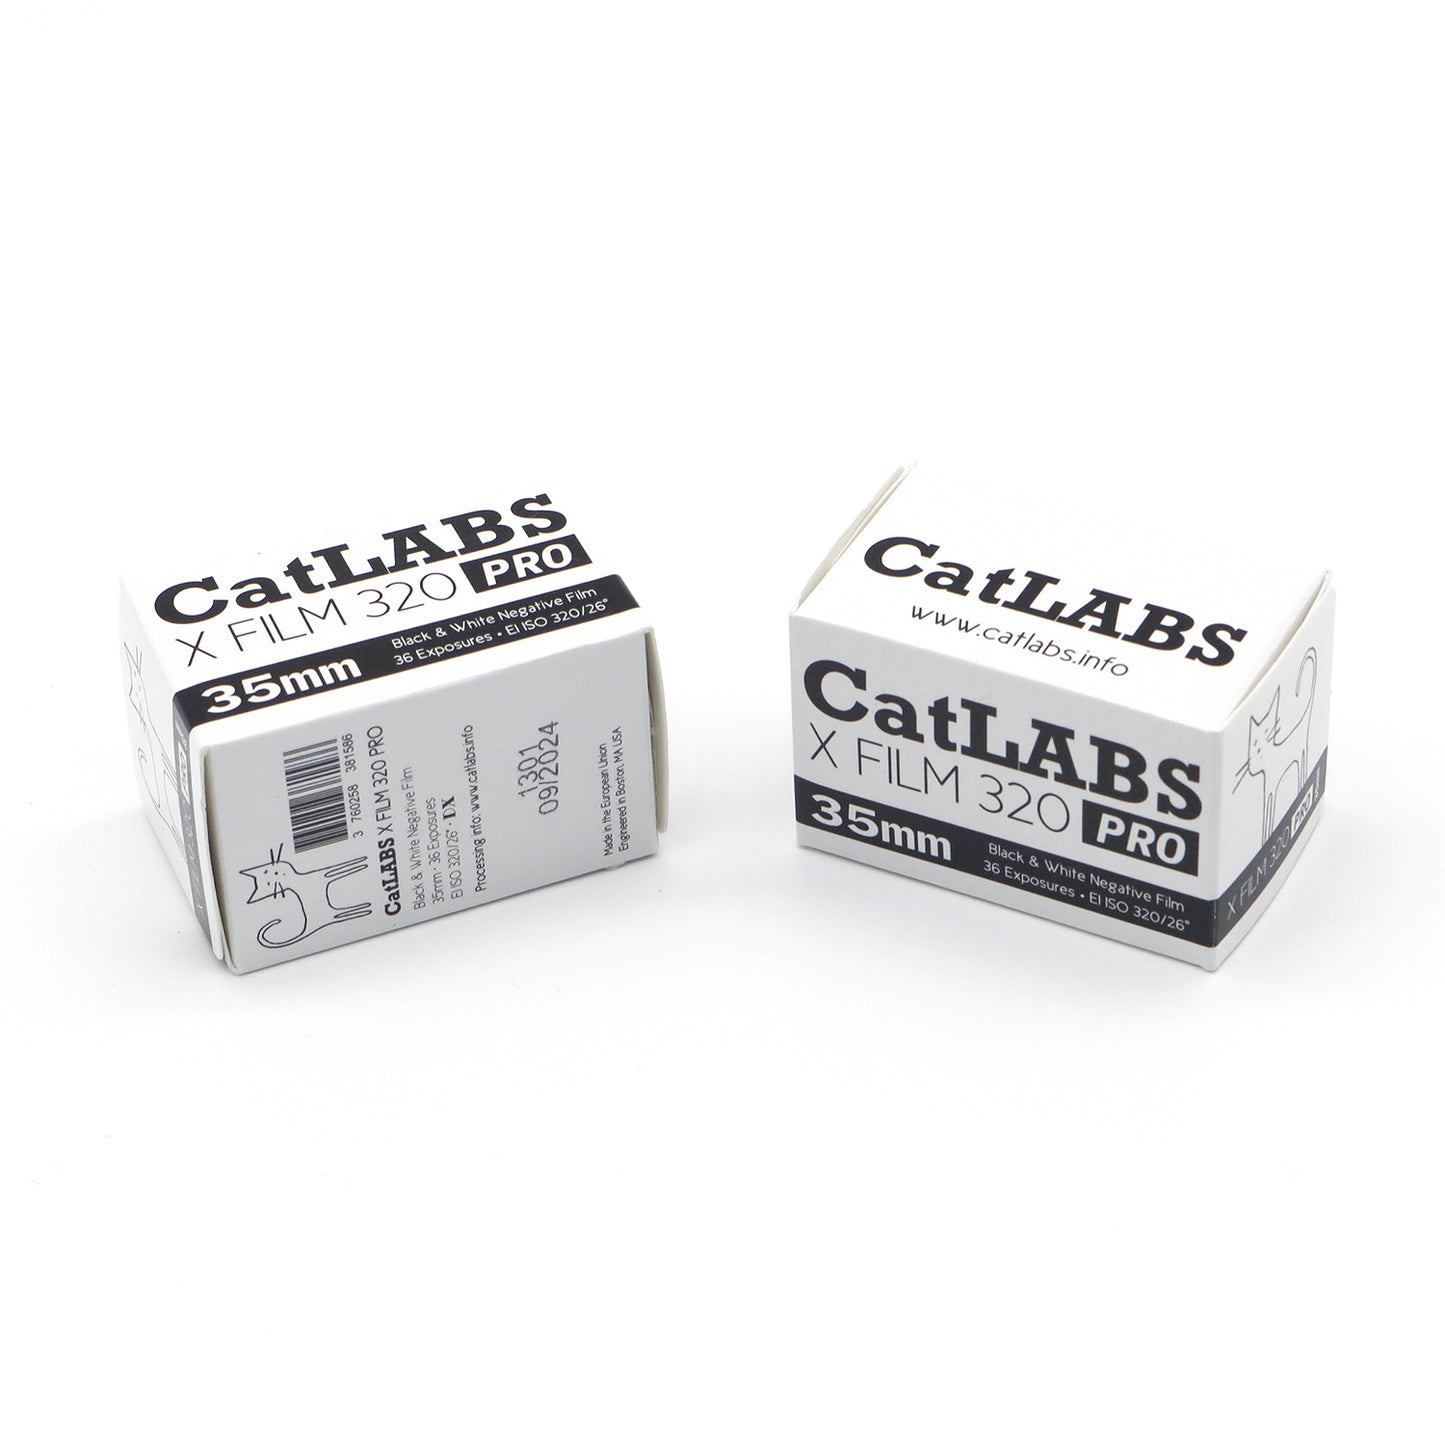 CatLABS X FILM 320 Pro 35mm B&W Film 36EXP